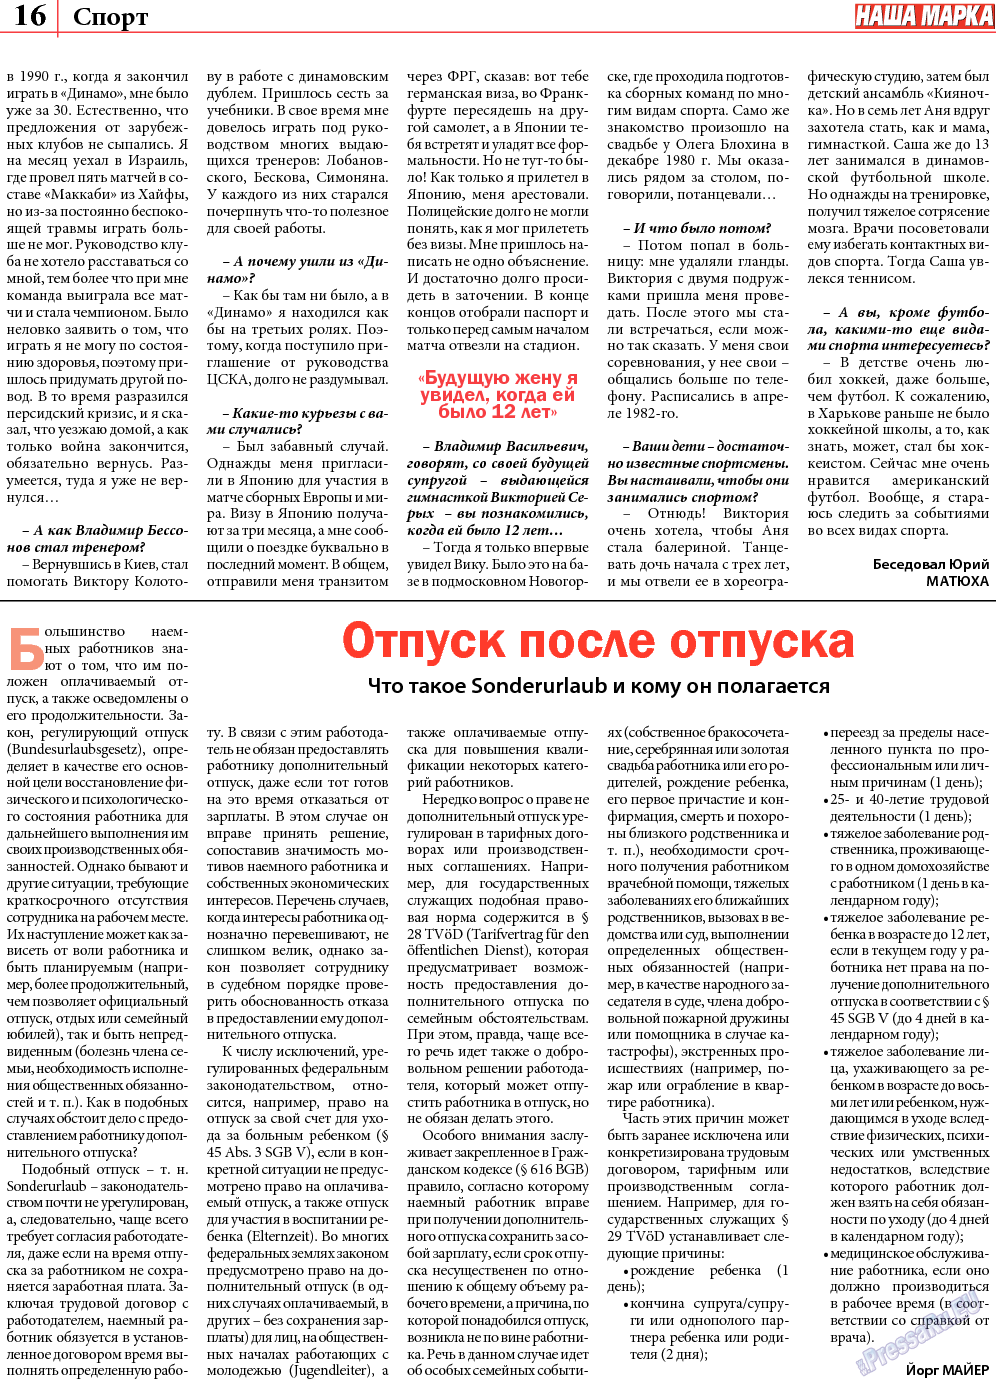 Наша марка (газета). 2013 год, номер 8, стр. 16